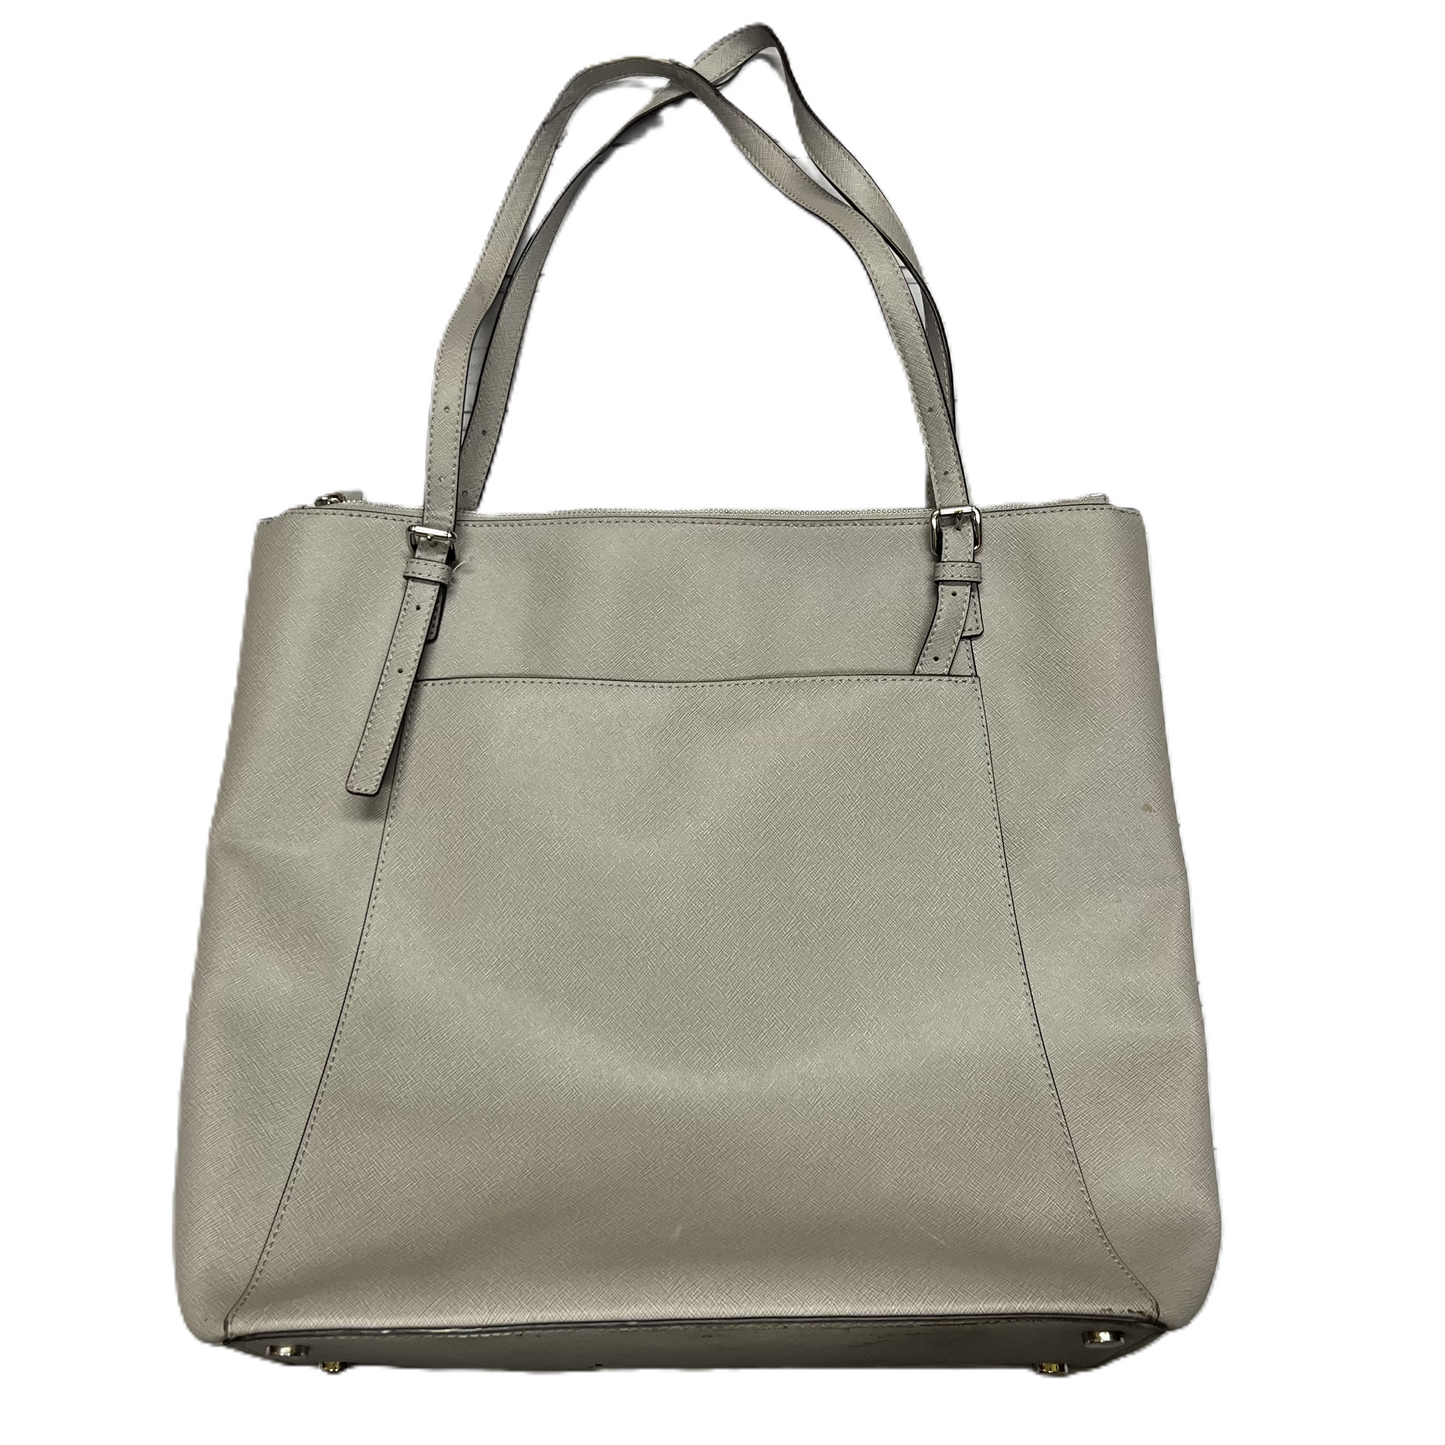 Handbag Designer By Michael Kors, Size: Large